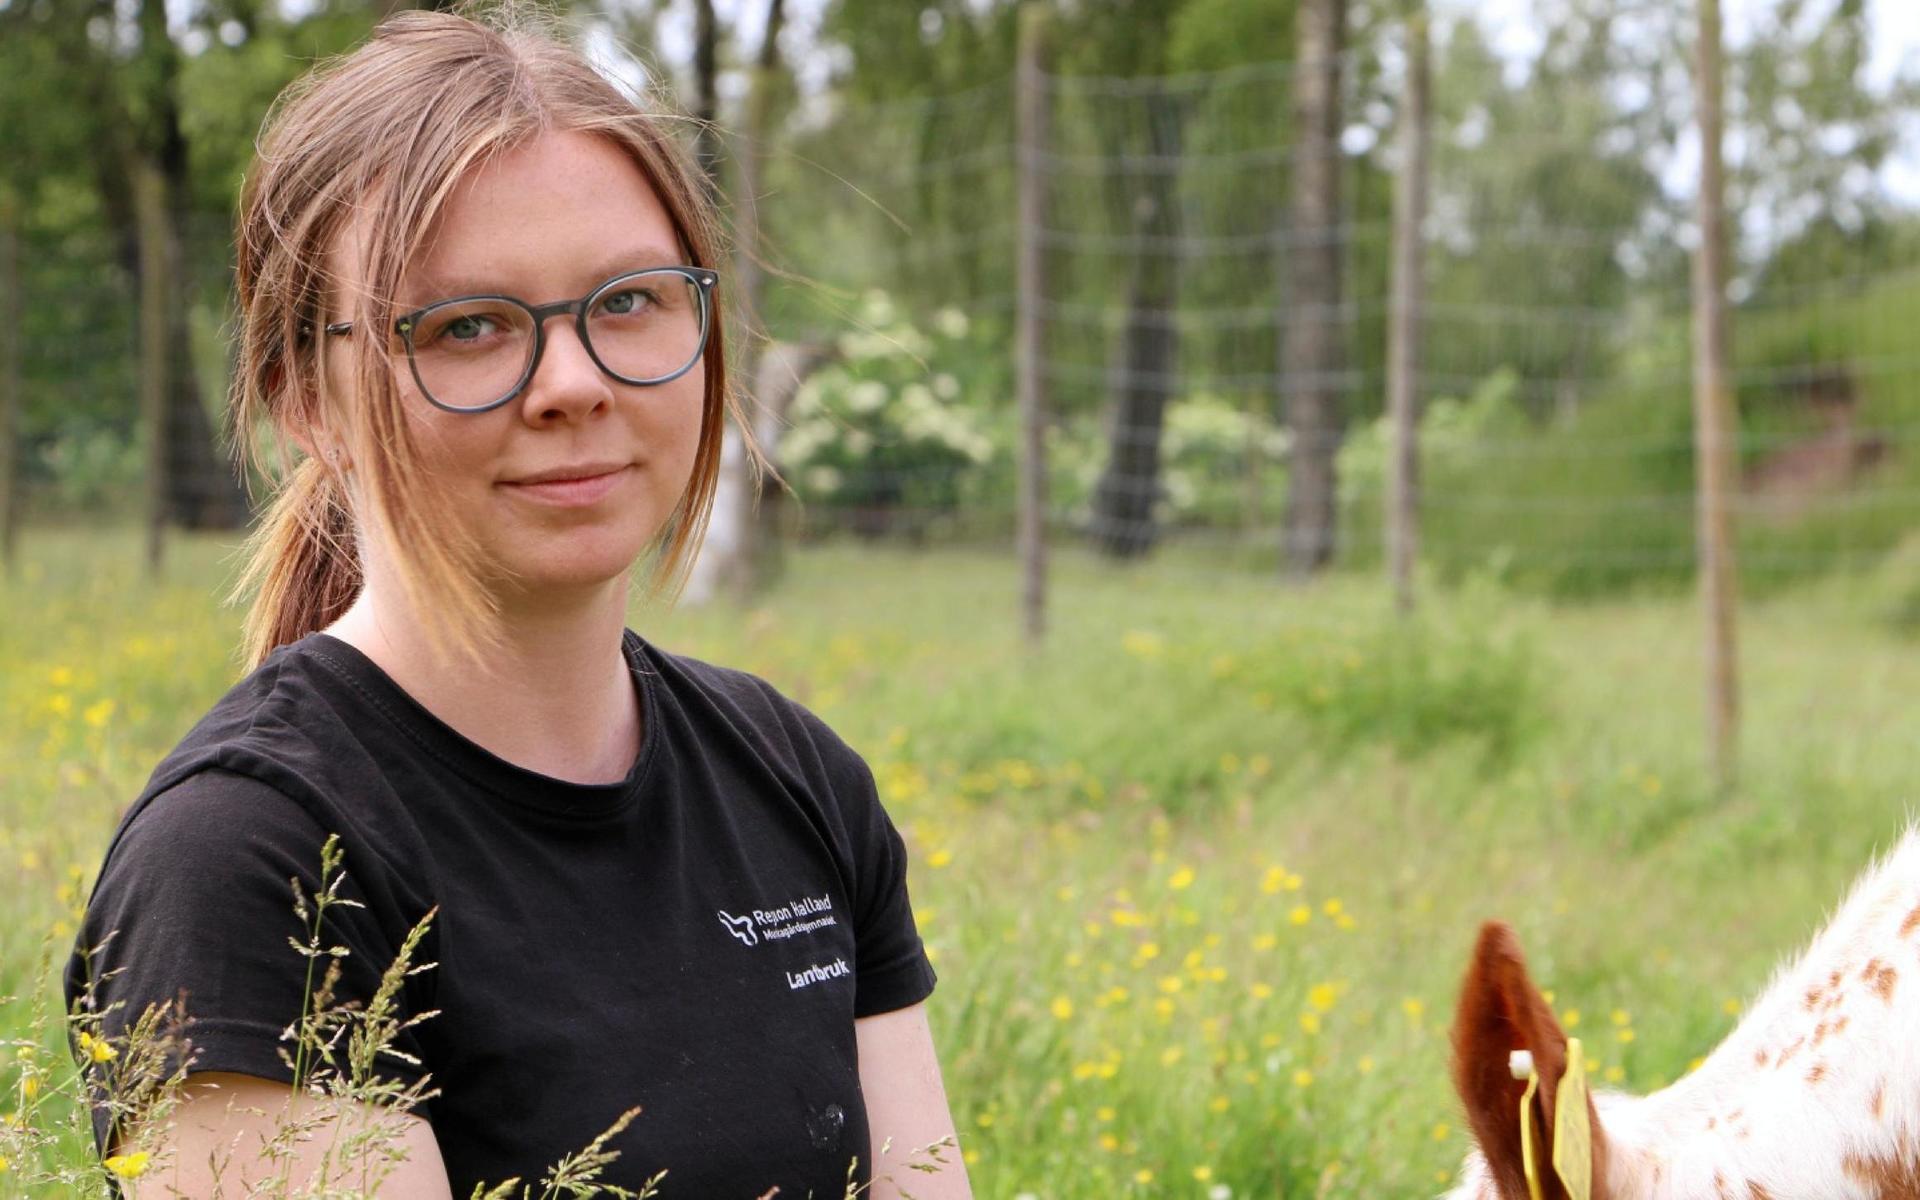 Emma Svensson har tidigare varit aktiv i Vi landsbyggare. Hon vann pris som årets landsbyggare kategori attityd under Landsbyggaredagen 2019 i Halland.